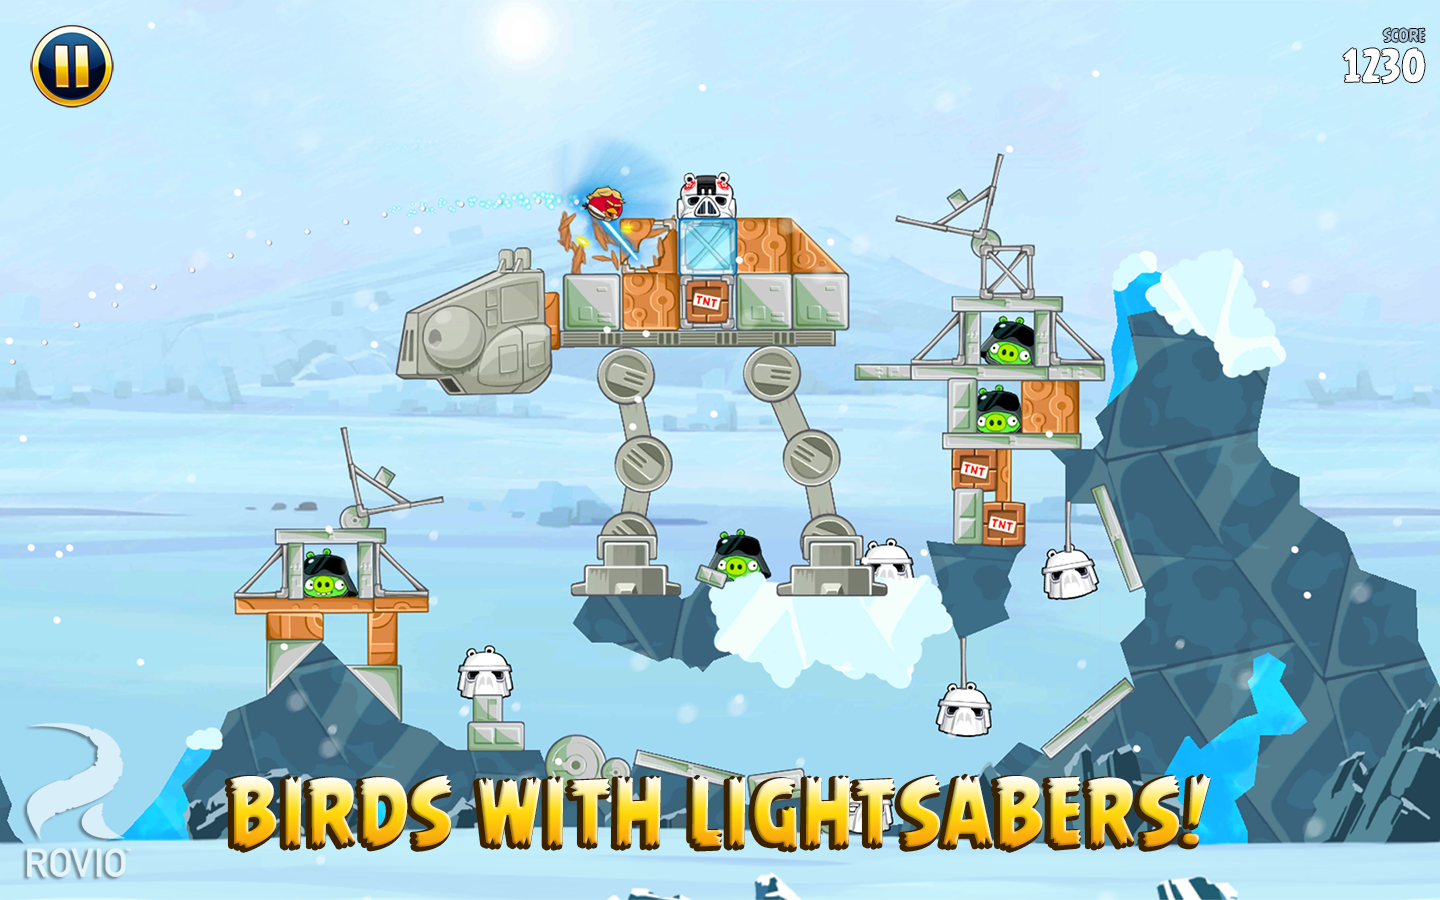 Angry Birds Star Wars KyORZFfxhp6Gj_JzqJ1DVOYF7rNy7lGc1Eez67M-RukFpdy00zNT7eVFacPjbu3hww=h900-rw